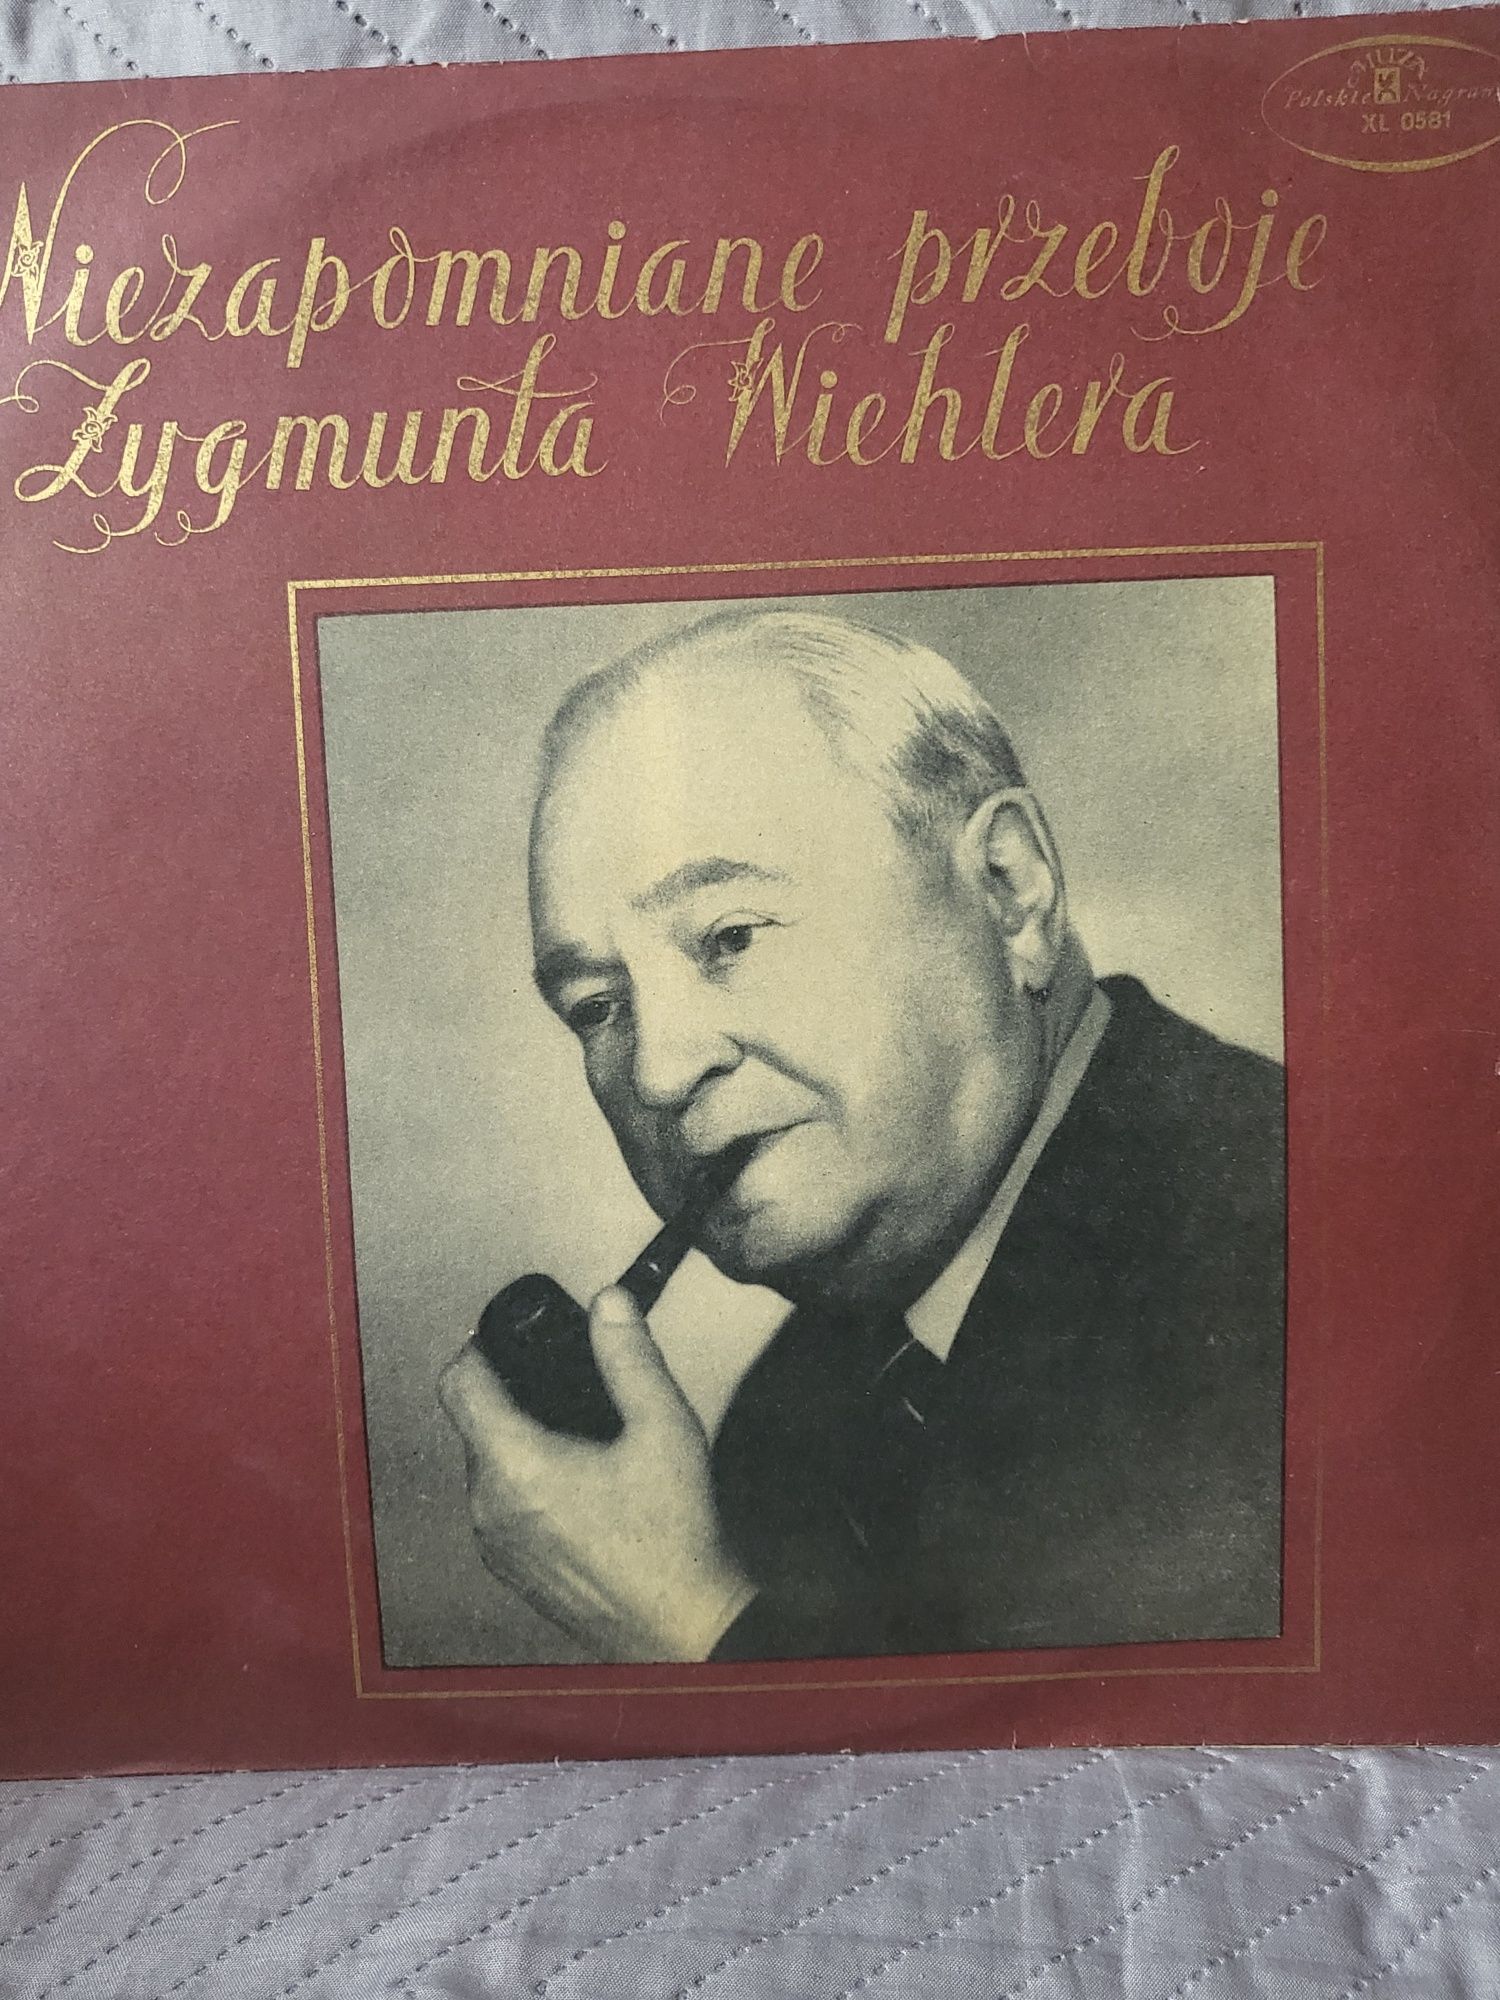 Płyta winylowa Niezapomniane przeboje Zygmunta Wiehlera - 70 r.Muza .